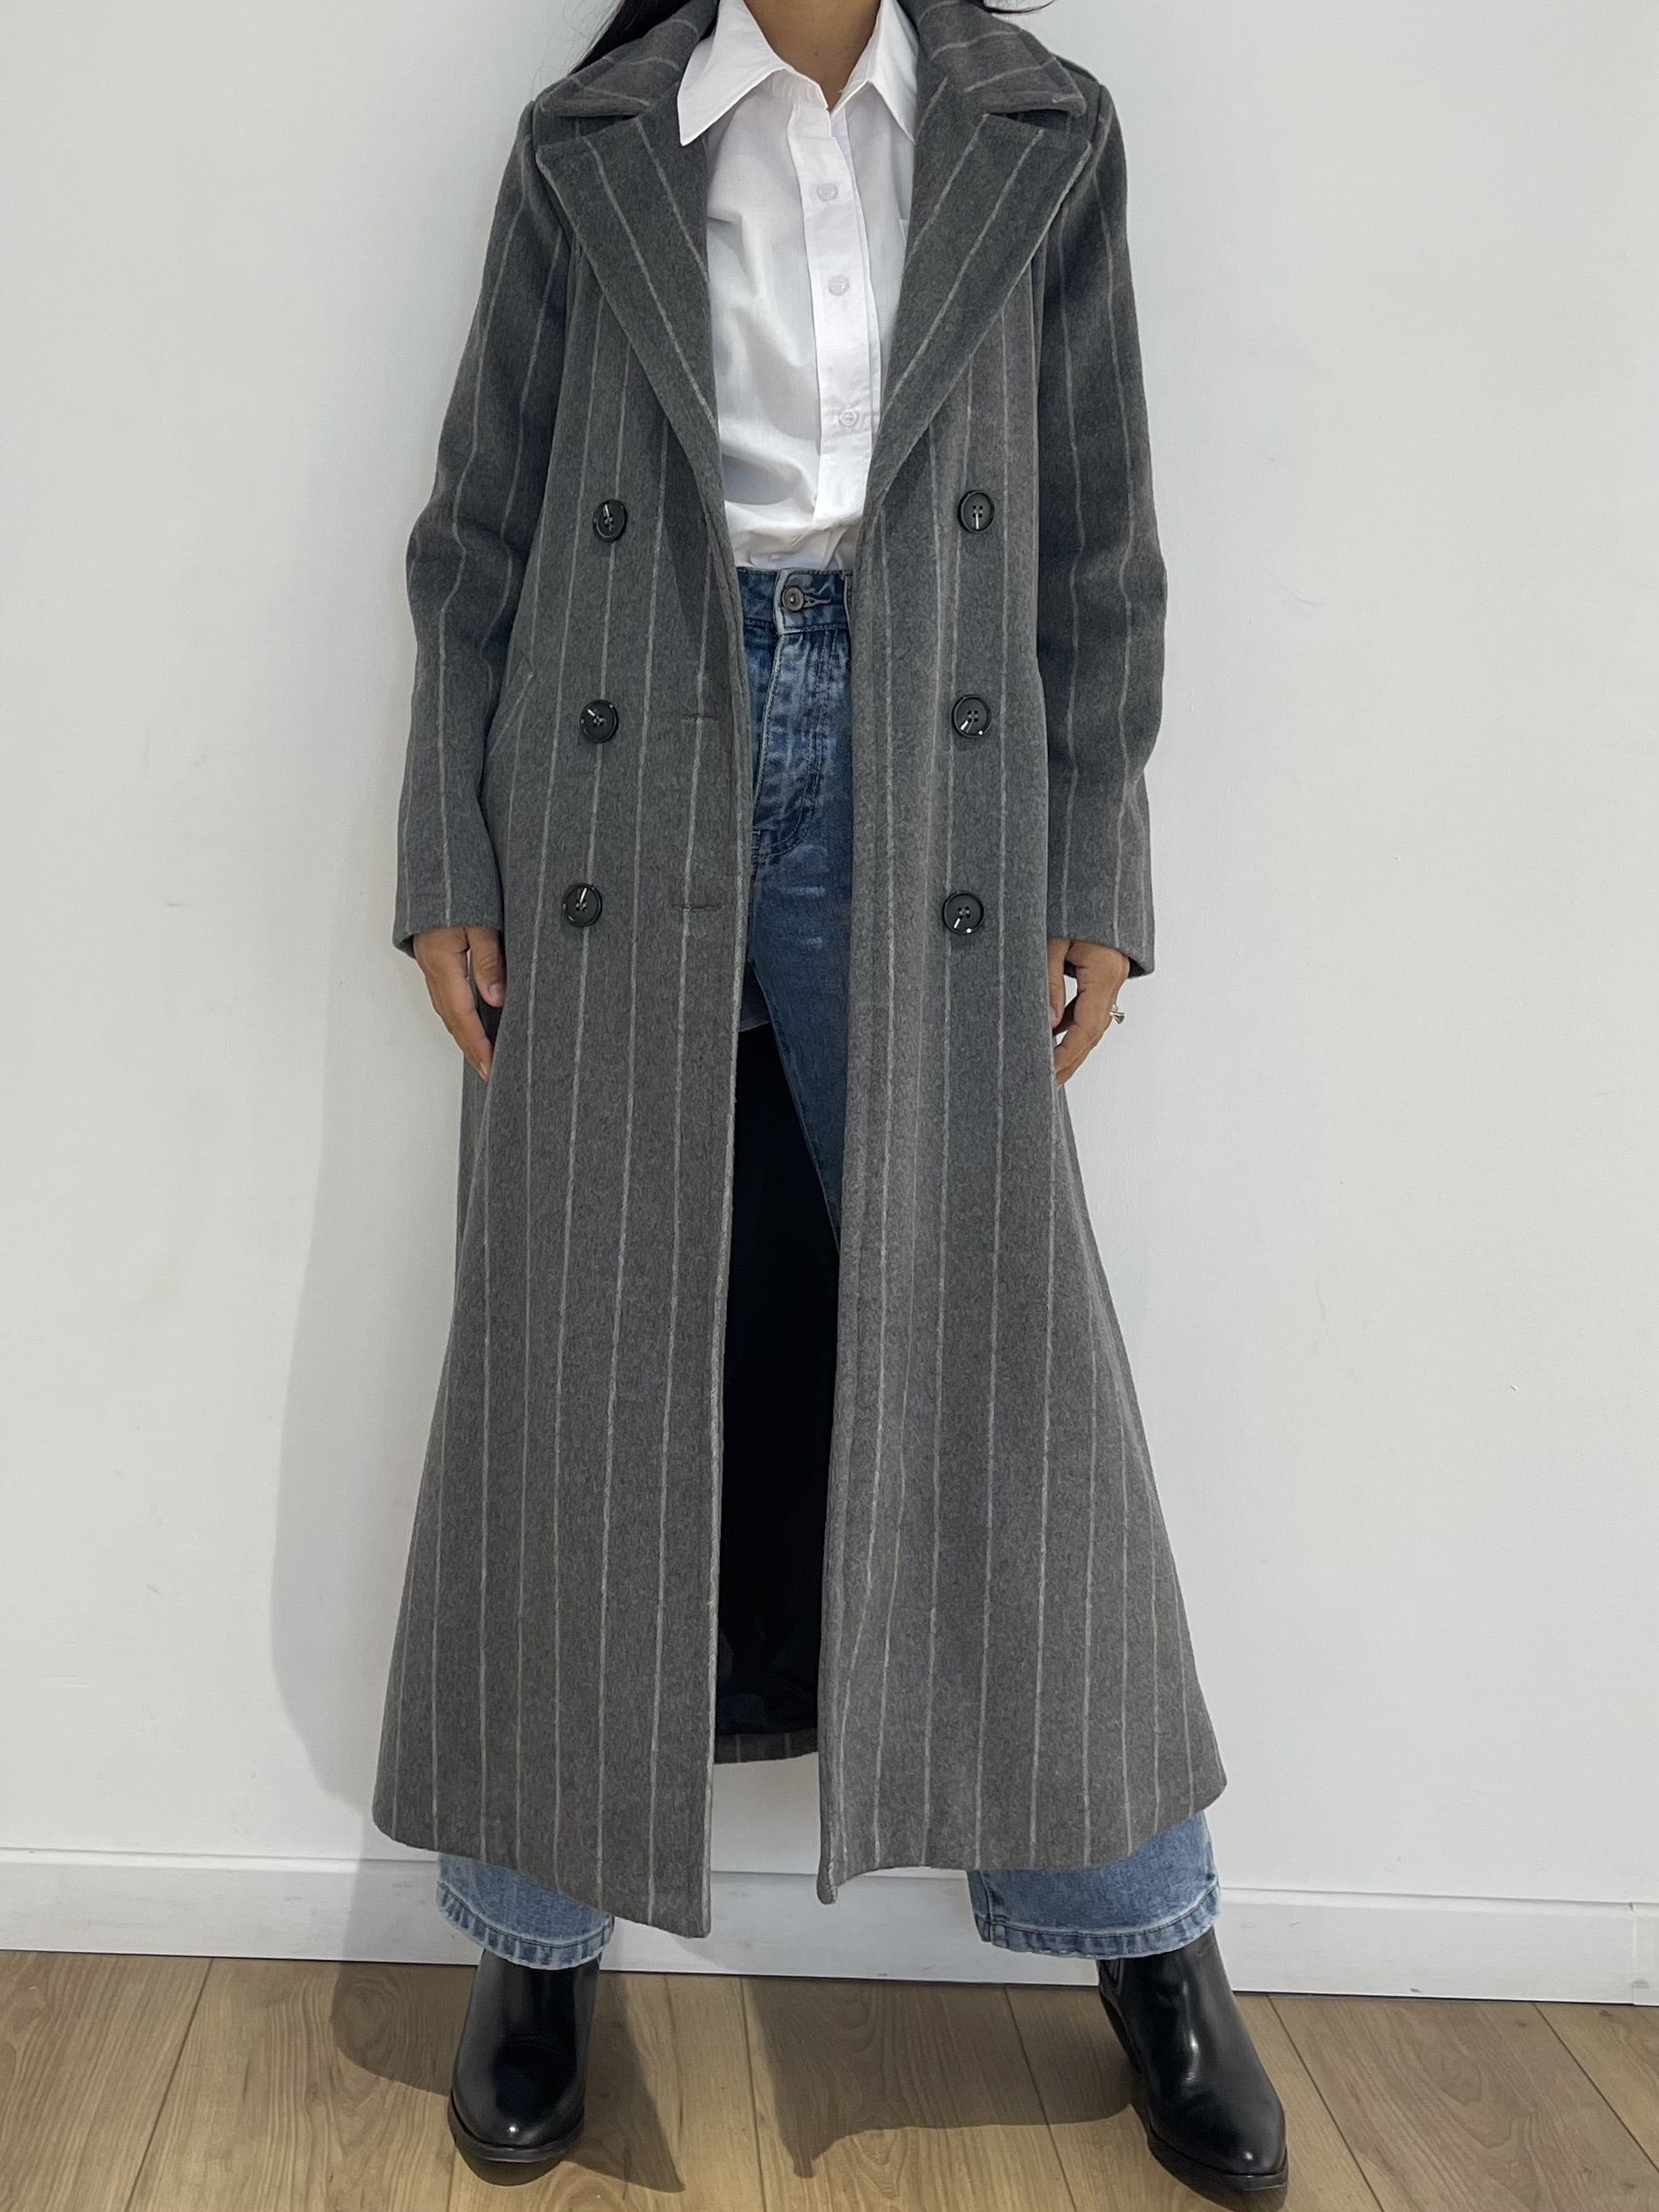 Manteau élancé à rayures fines porté ouvert sur un jean